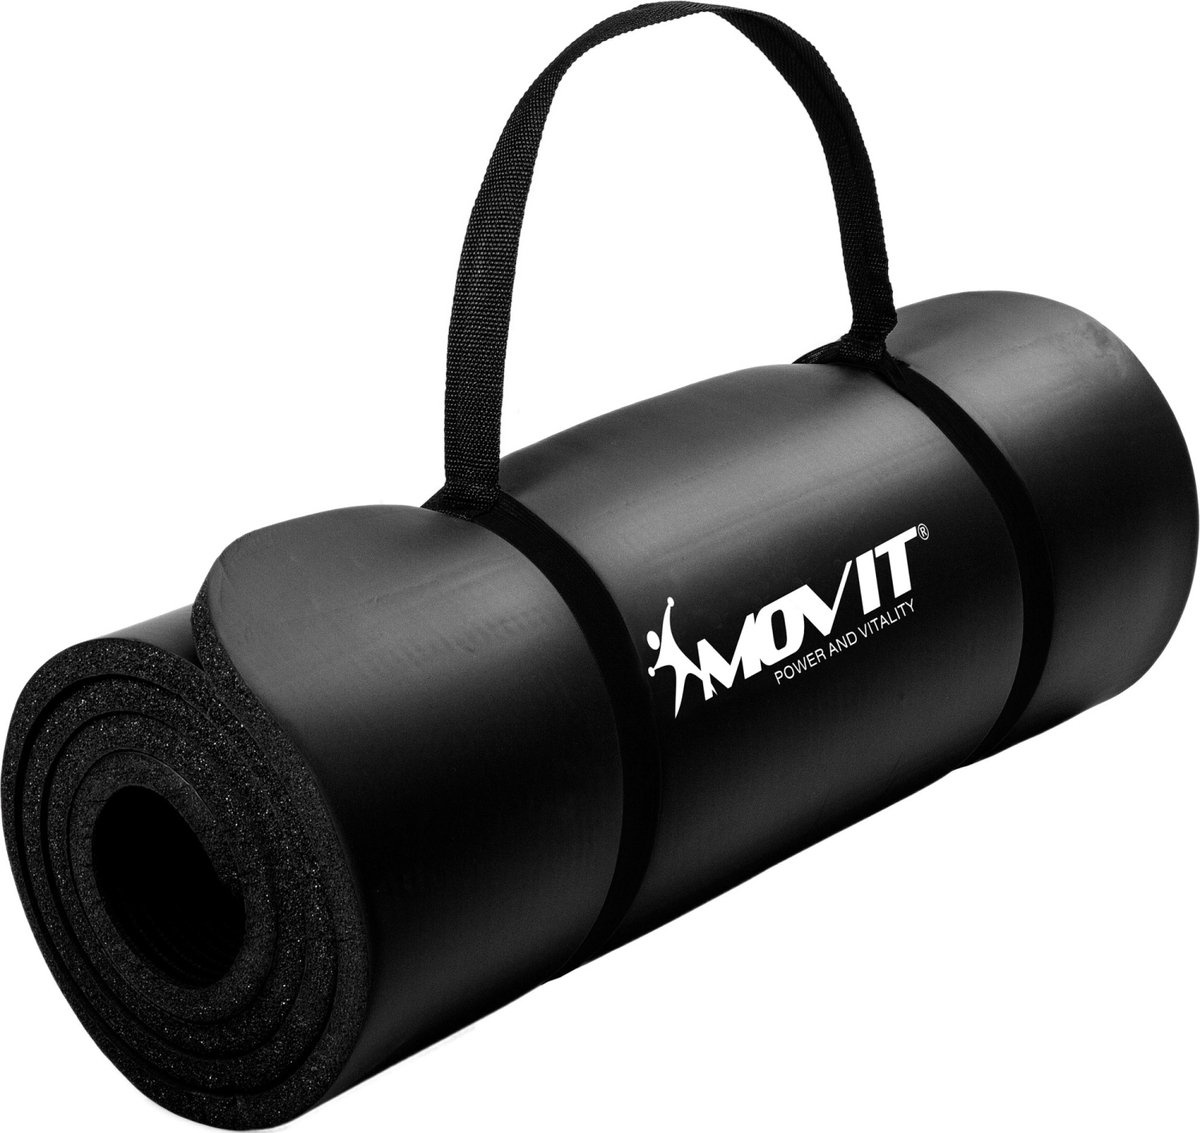 Yoga mat - Yogamat - Fitness mat - Sport mat - Fitness matje - Pilates mat - Oprolbaar - Inclusief handgreep - 190 x 60 x 1.5 cm - Zwart